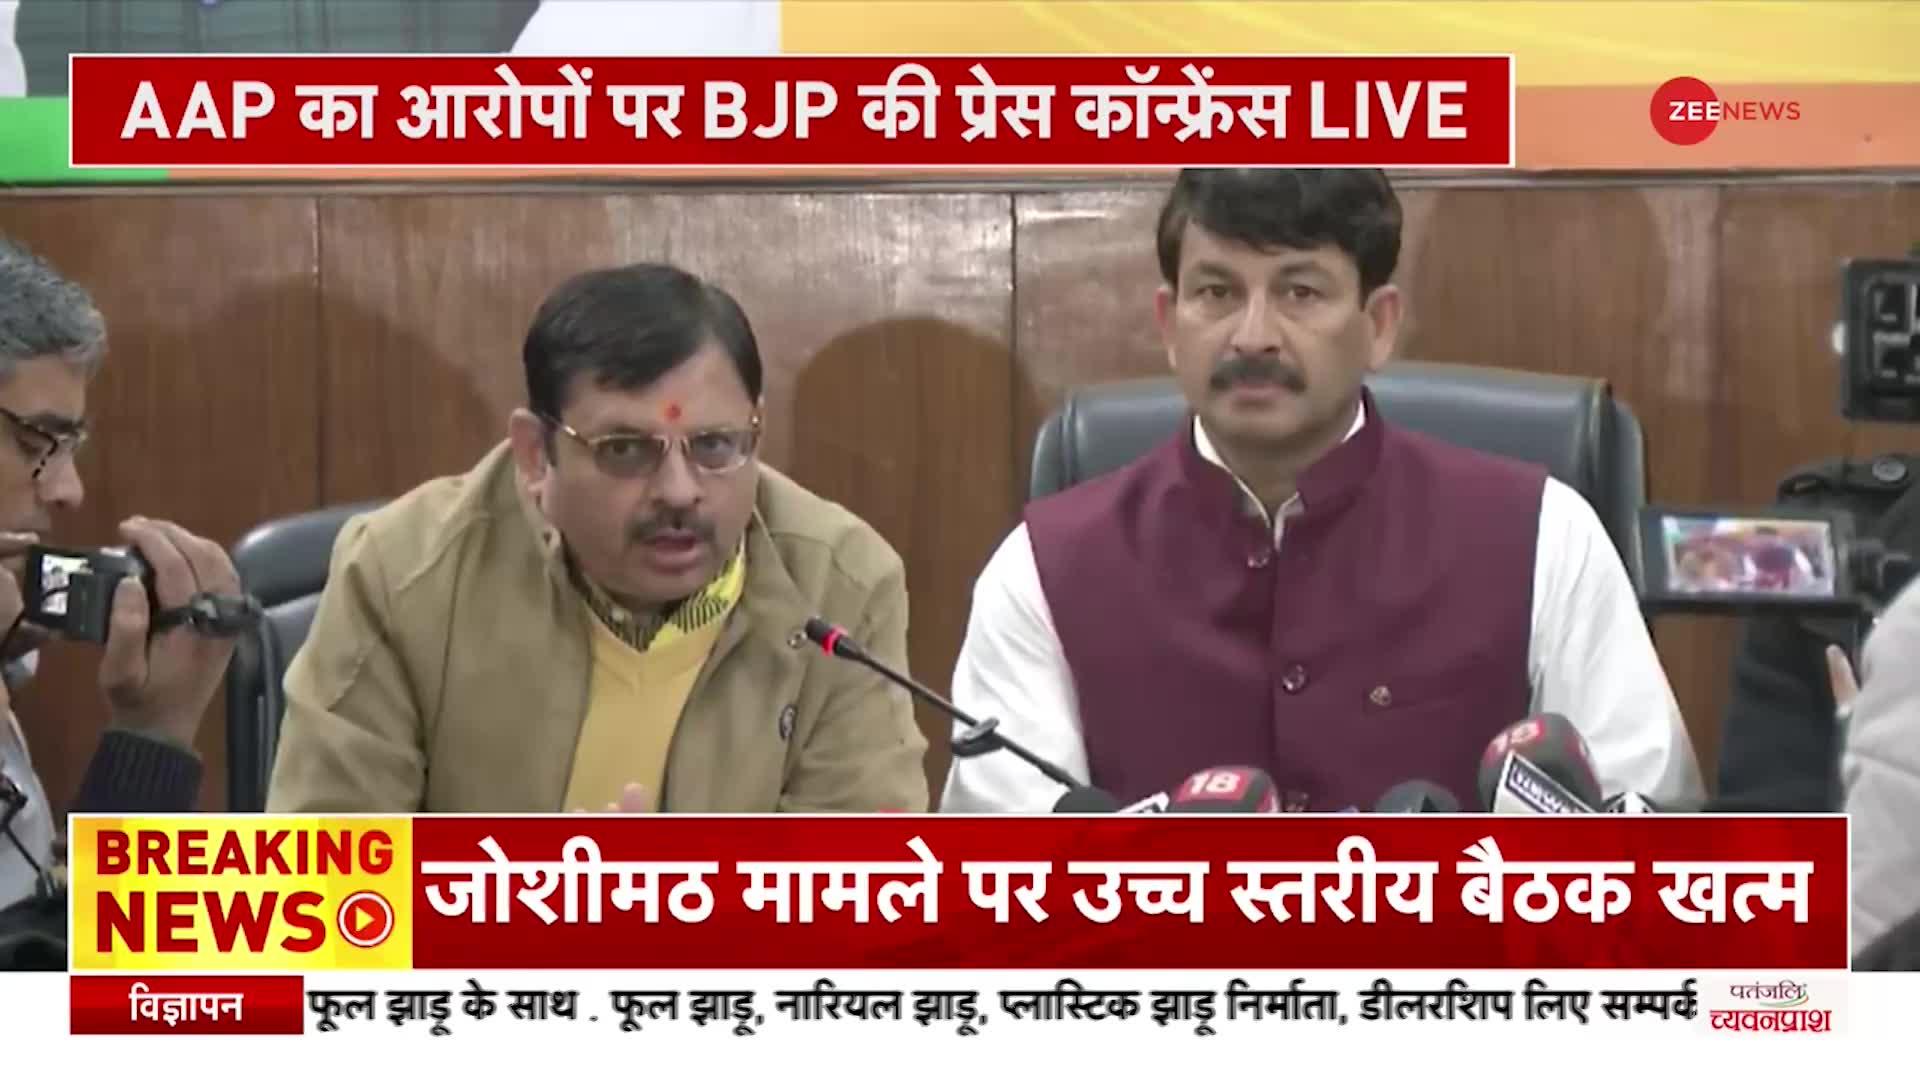 BJP PC On AAP: AAP के आरोपों पर बीजेपी ने की प्रेस कांफ्रेंस, Manoj Tiwari बोले, 'आप झटपटा रही है'